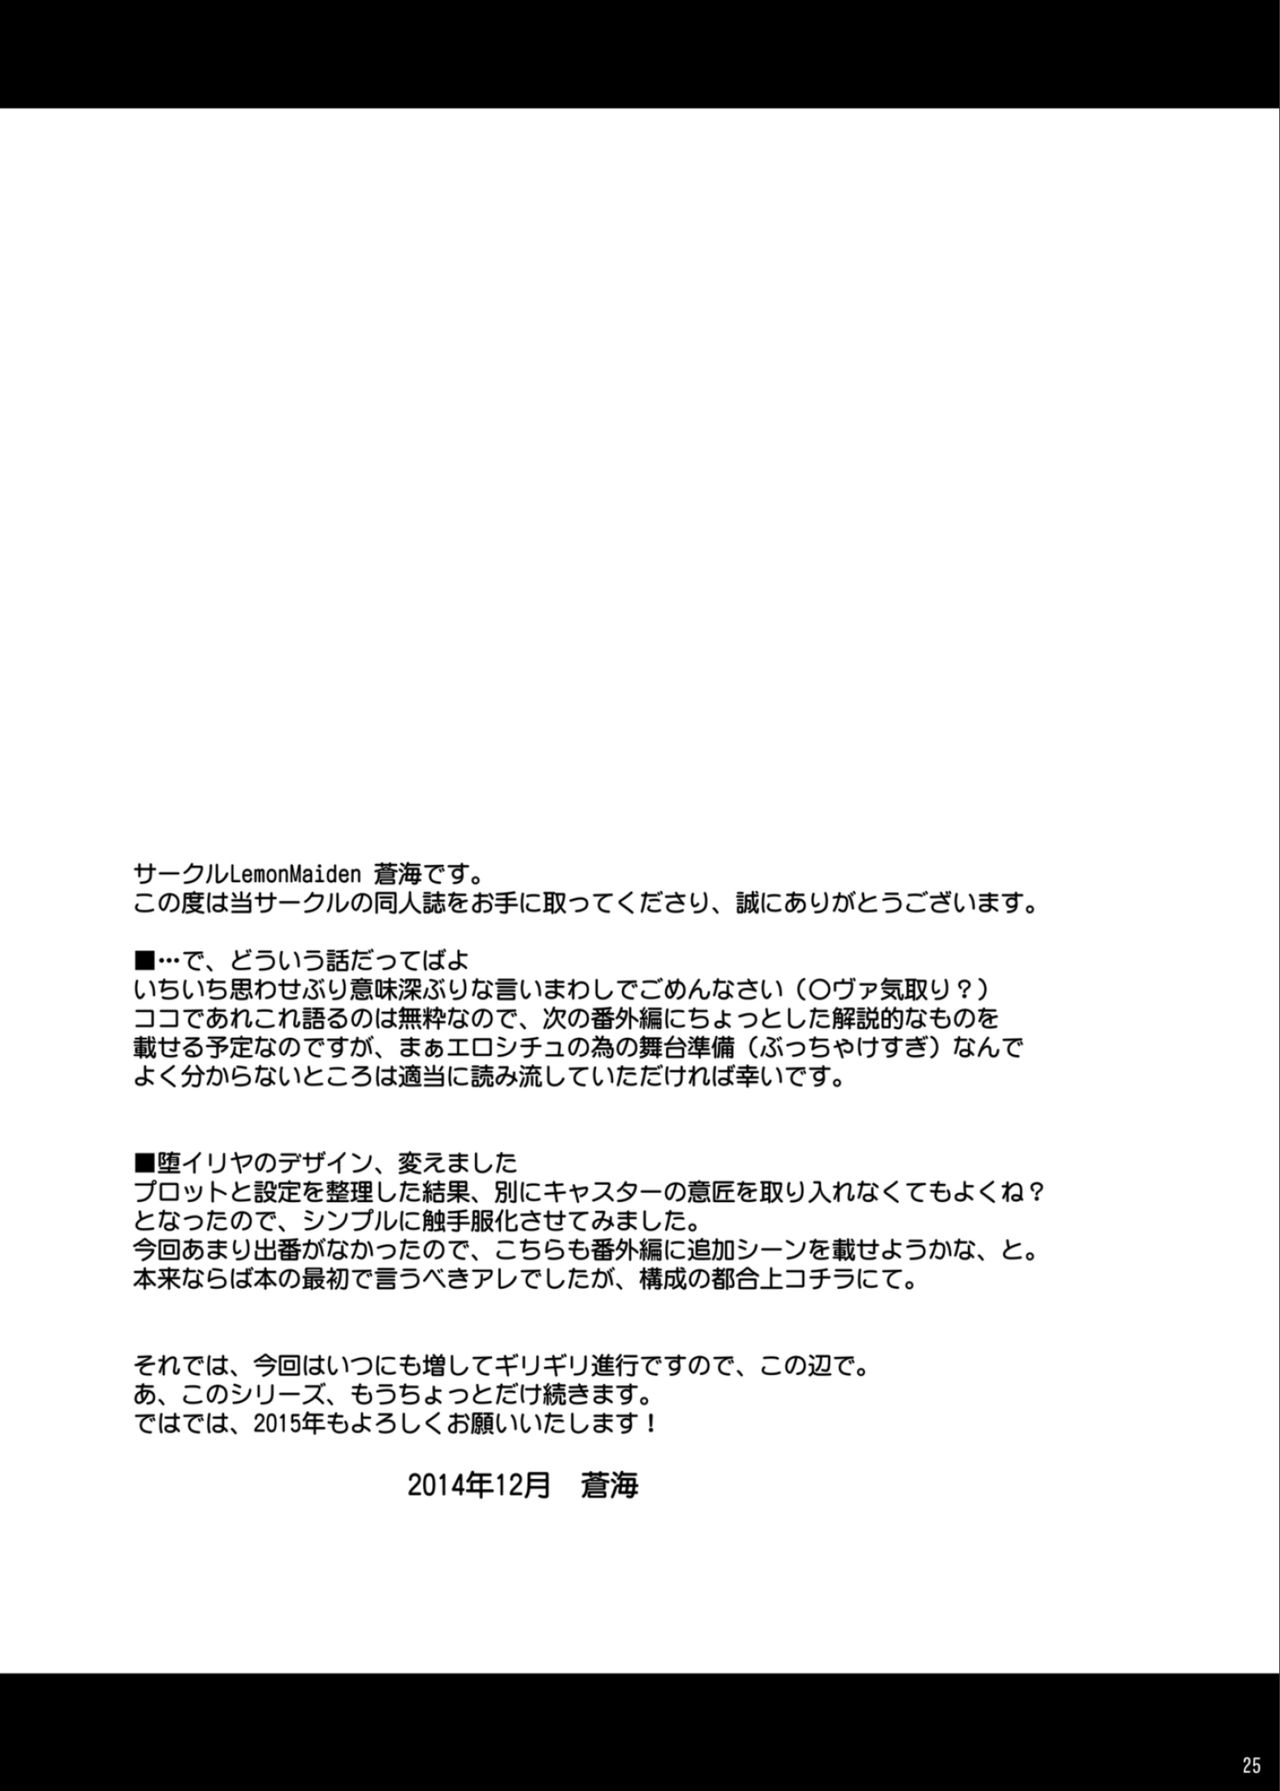 [LemonMaiden (蒼海)] 堕天使XX EPISODE1&2 (Fate/kaleid liner プリズマ☆イリヤ) [DL版]